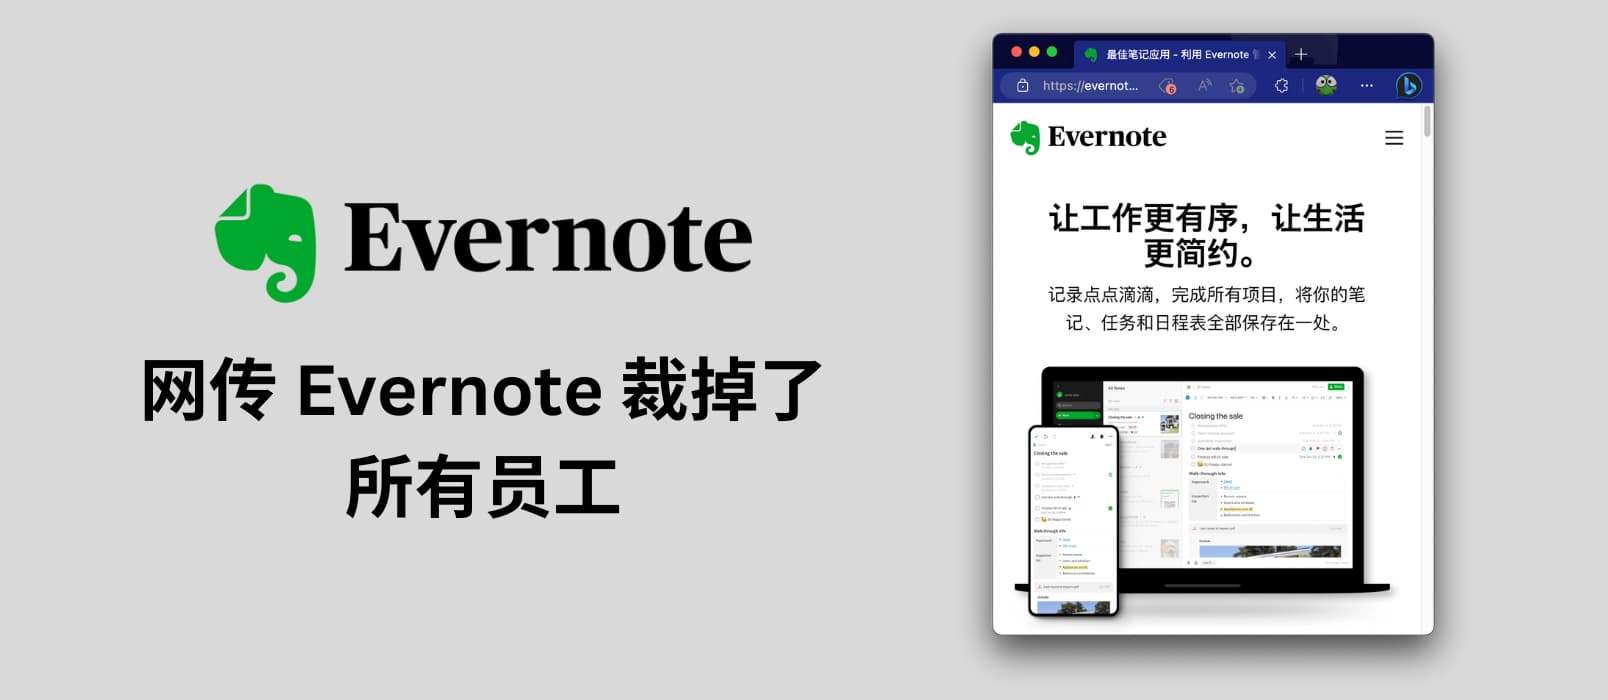 网传 Evernote 裁掉了所有员工